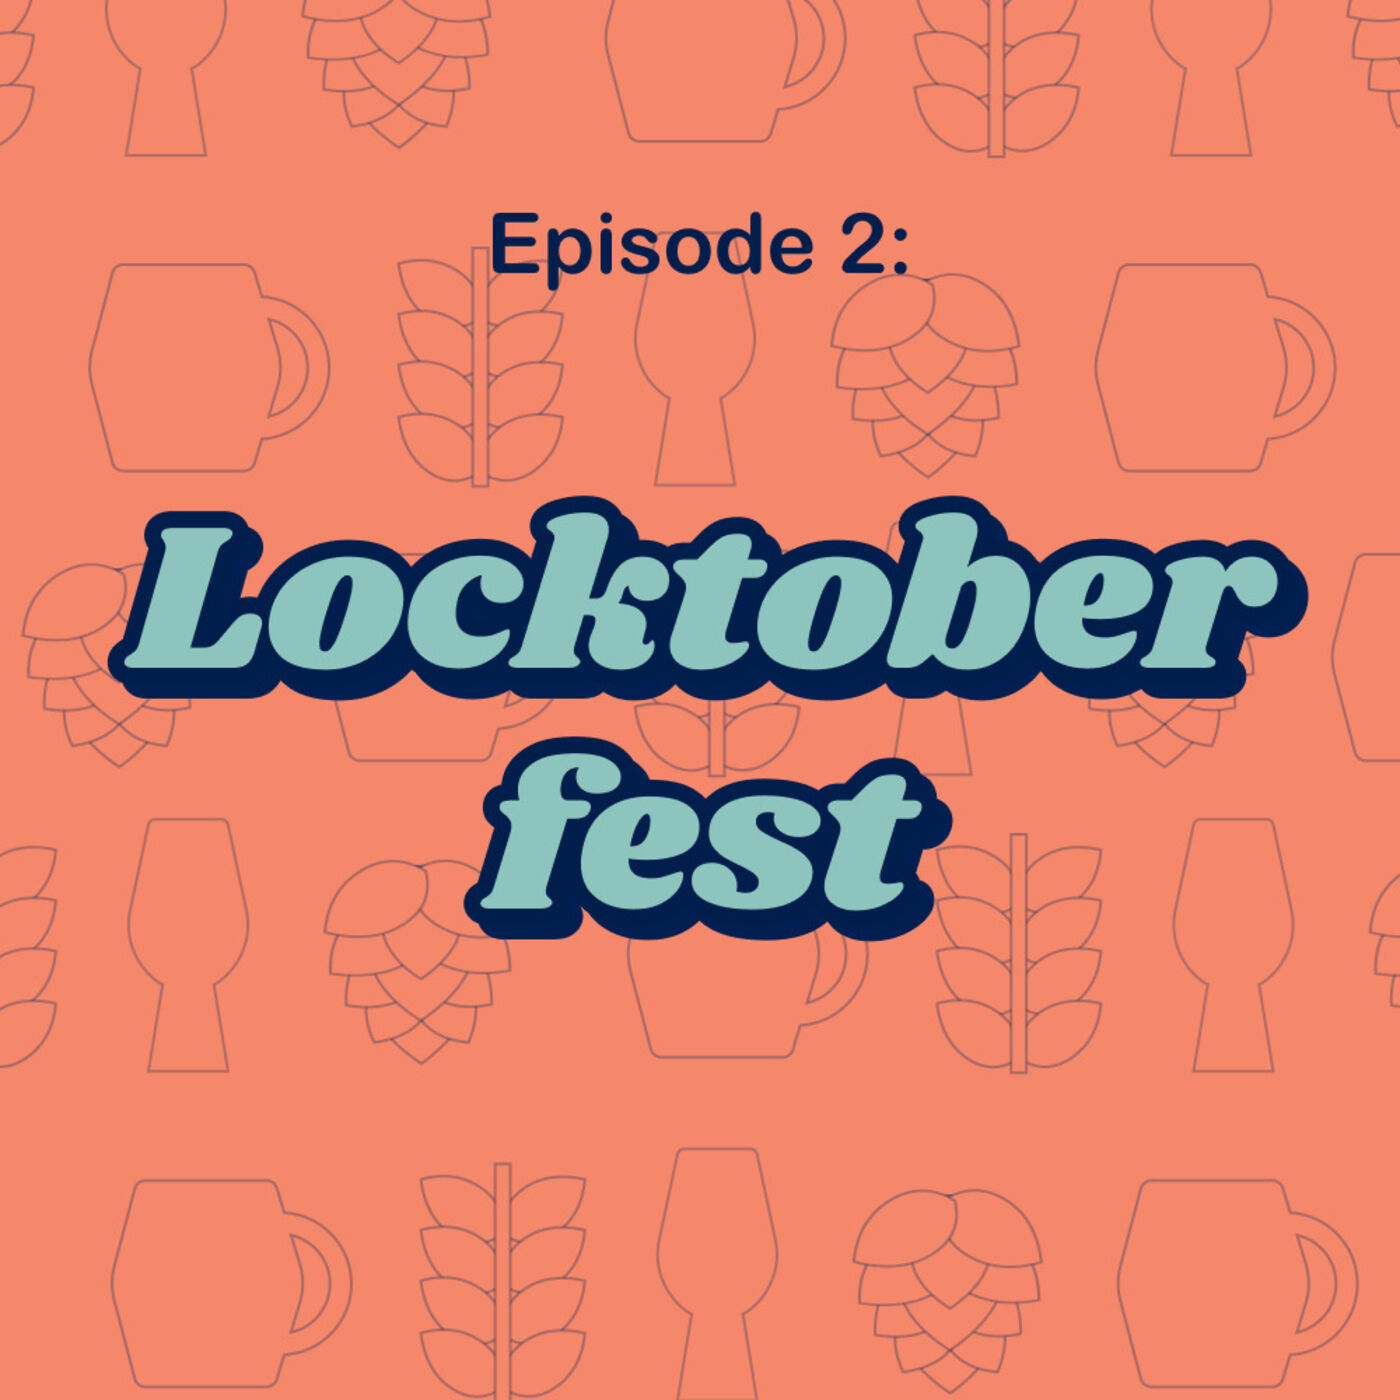 2: Locktoberfest